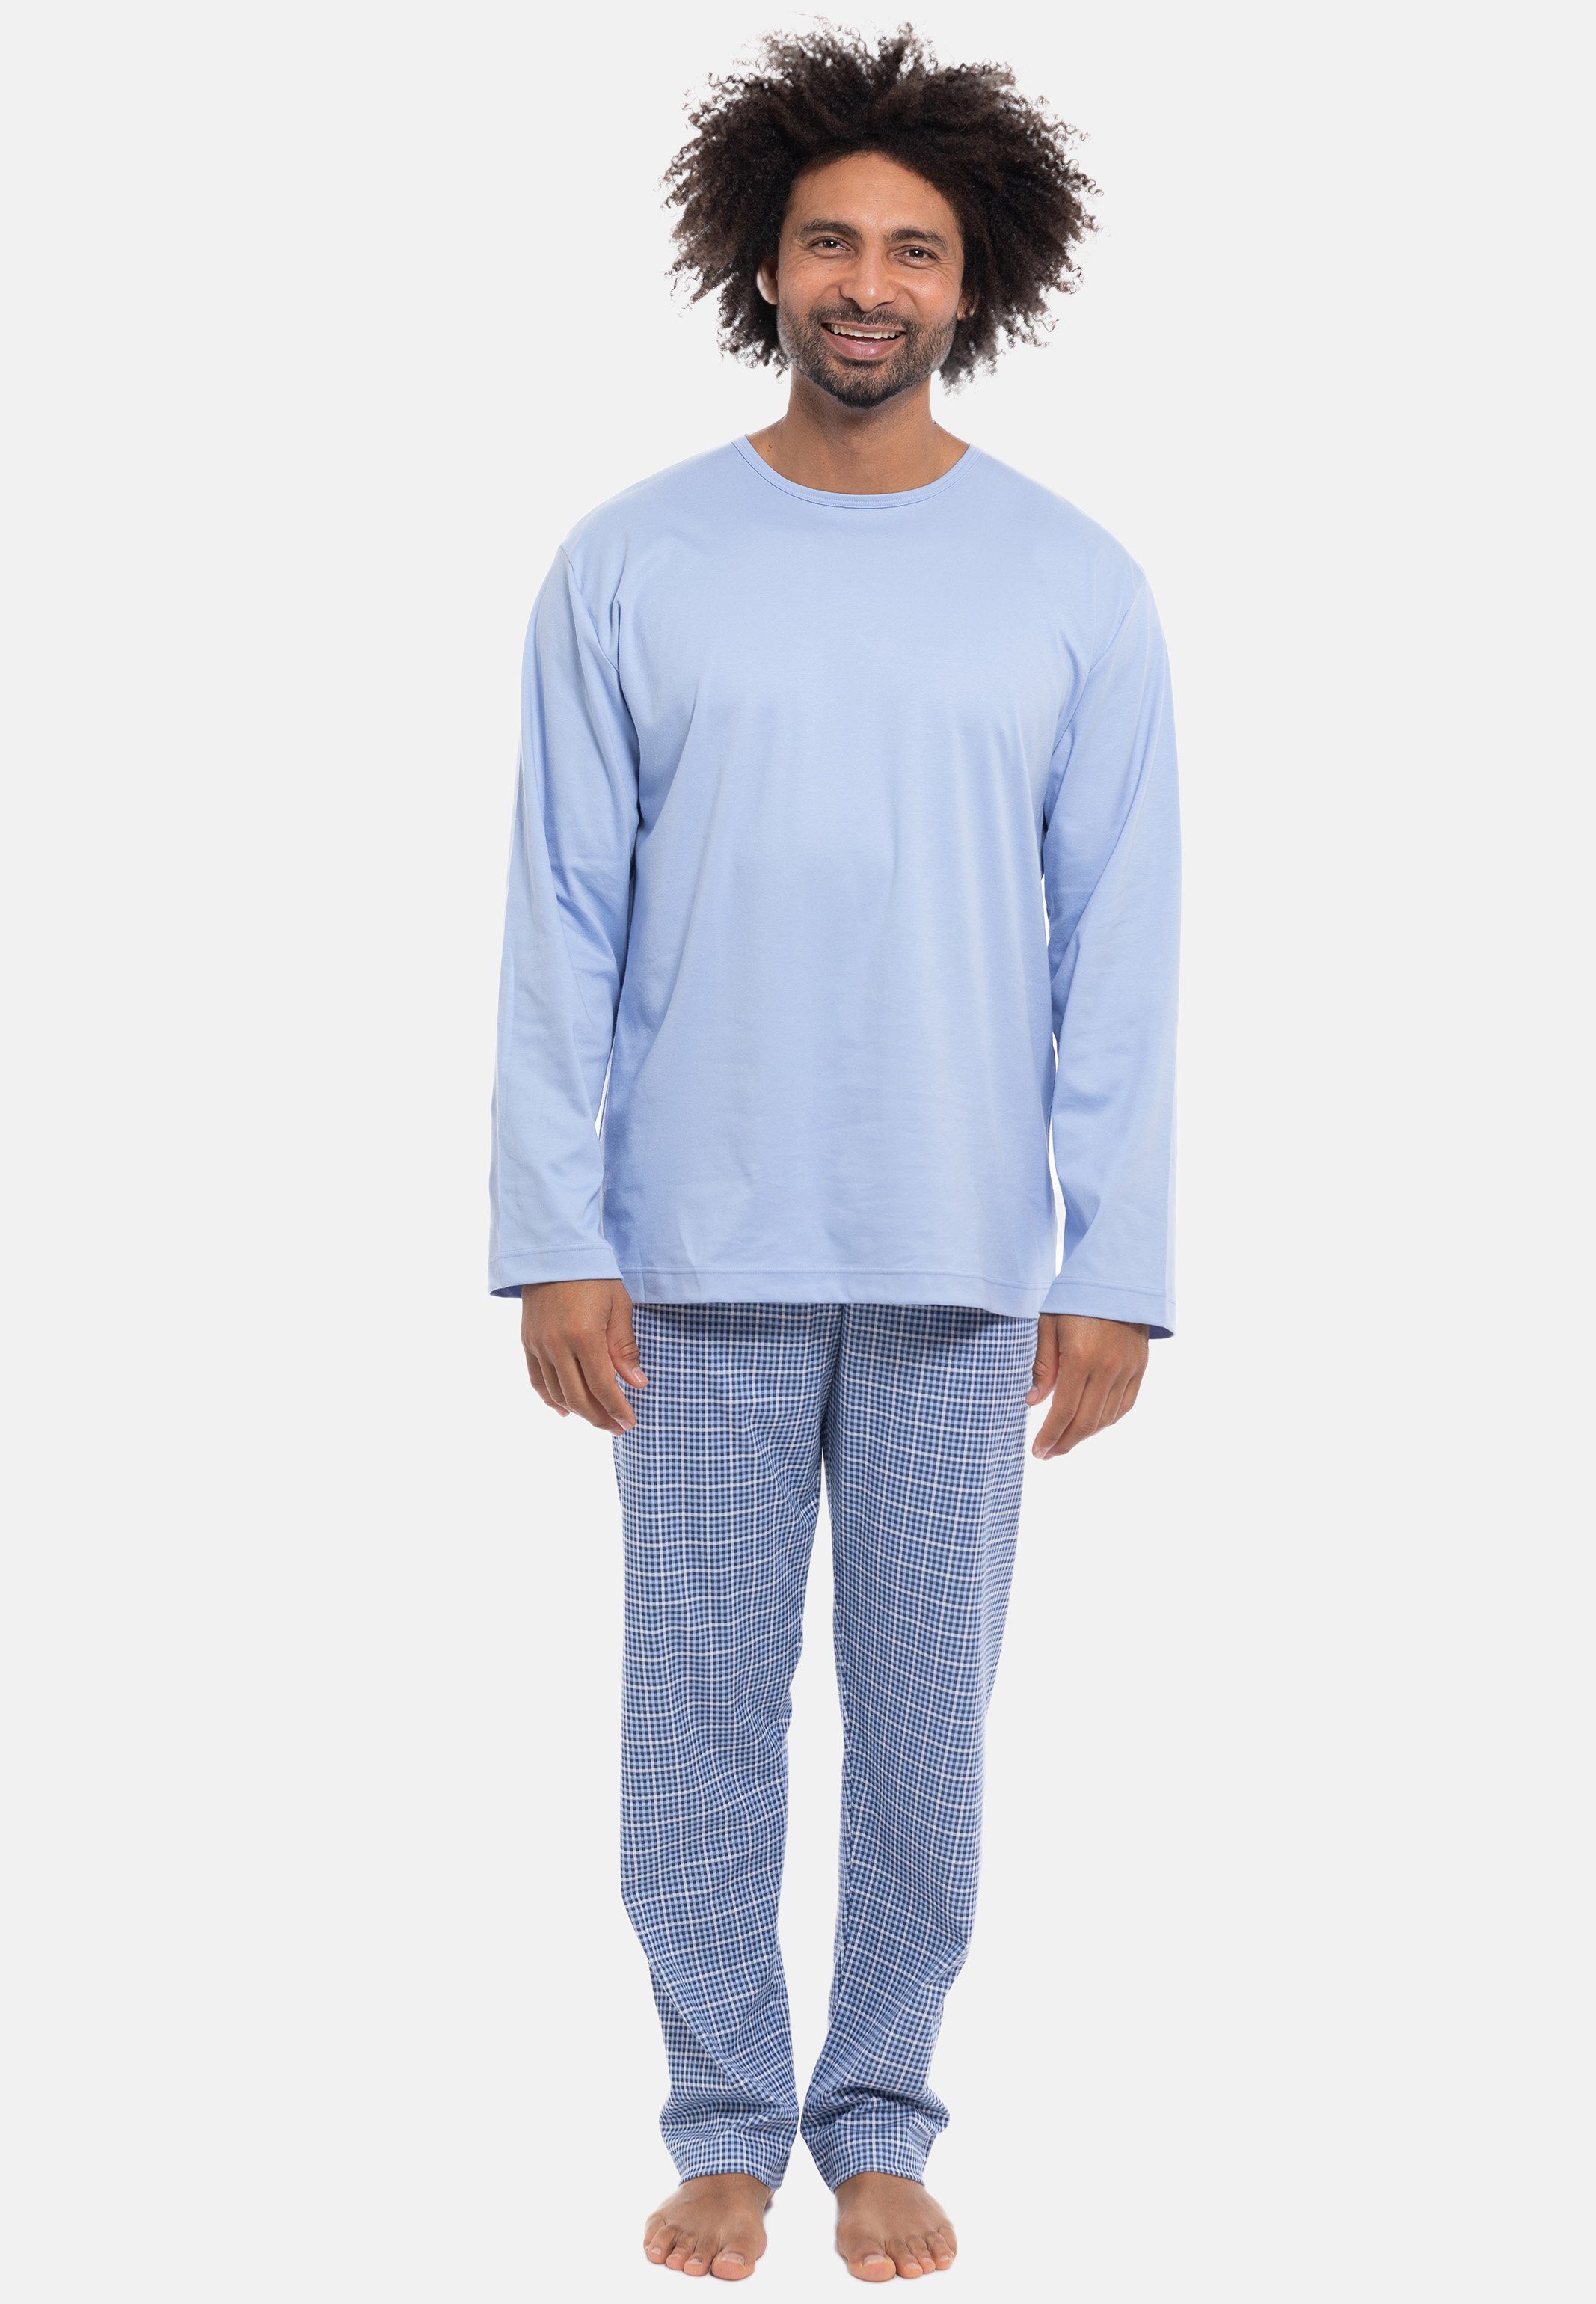 Wäsche/Bademode Nachtwäsche Mey Pyjama Lounge - Nightwear (Set, 2 tlg) Schlafanzug Langarm - Baumwolle - Langarm-Shirt und lange